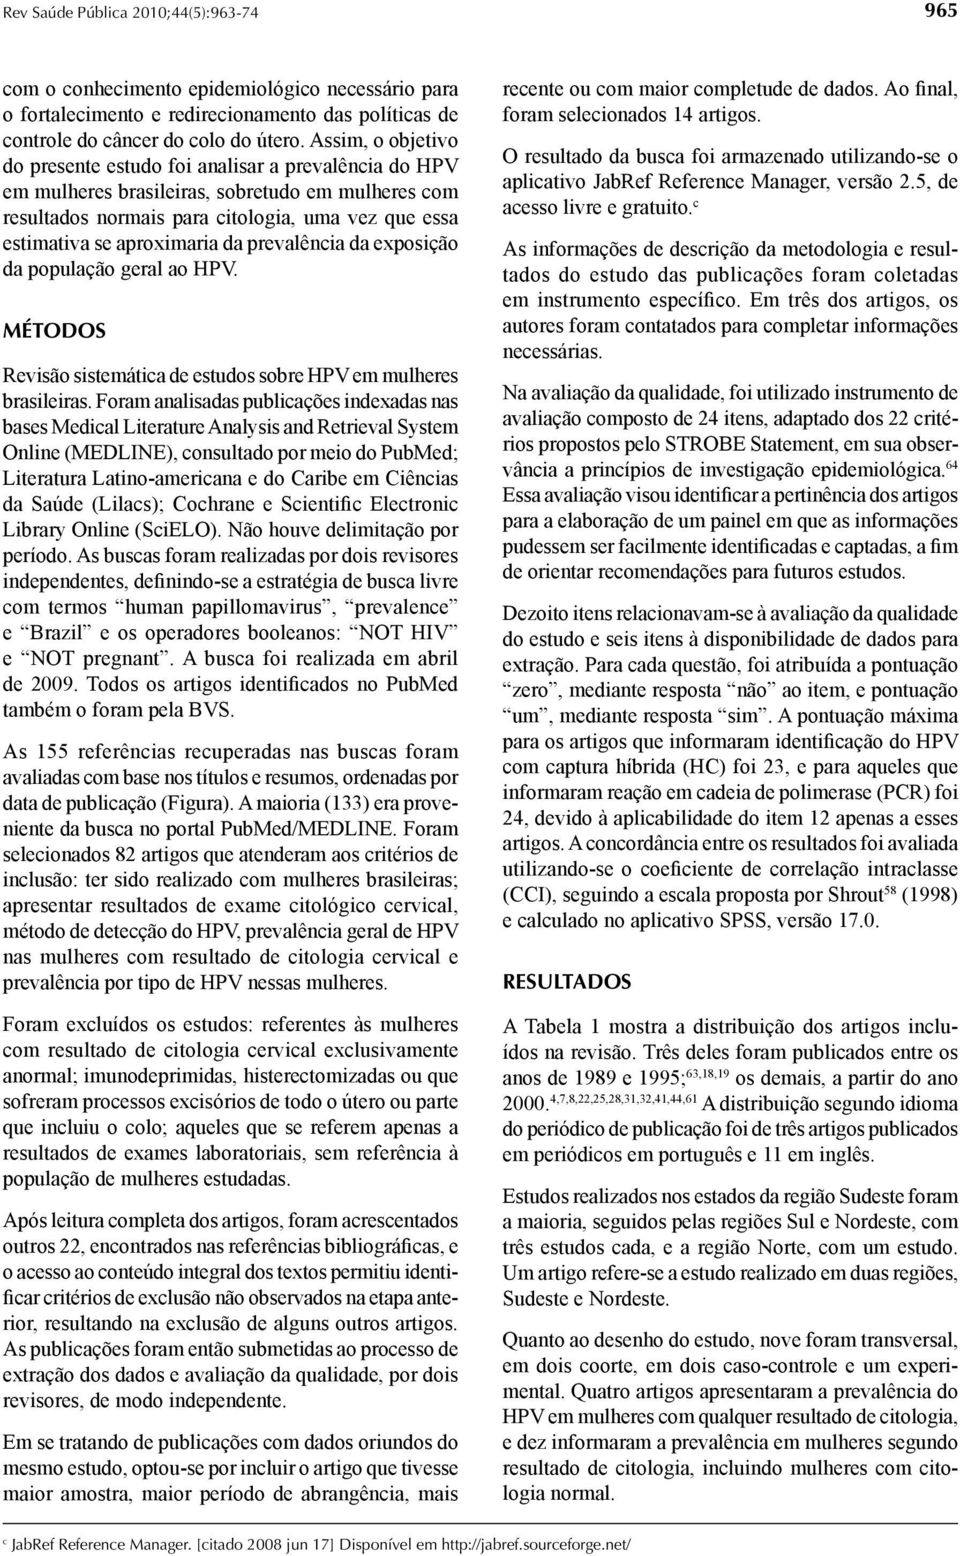 da prevalência da exposição da população geral ao HPV. MÉTODOS Revisão sistemática de estudos sobre HPV em mulheres brasileiras.